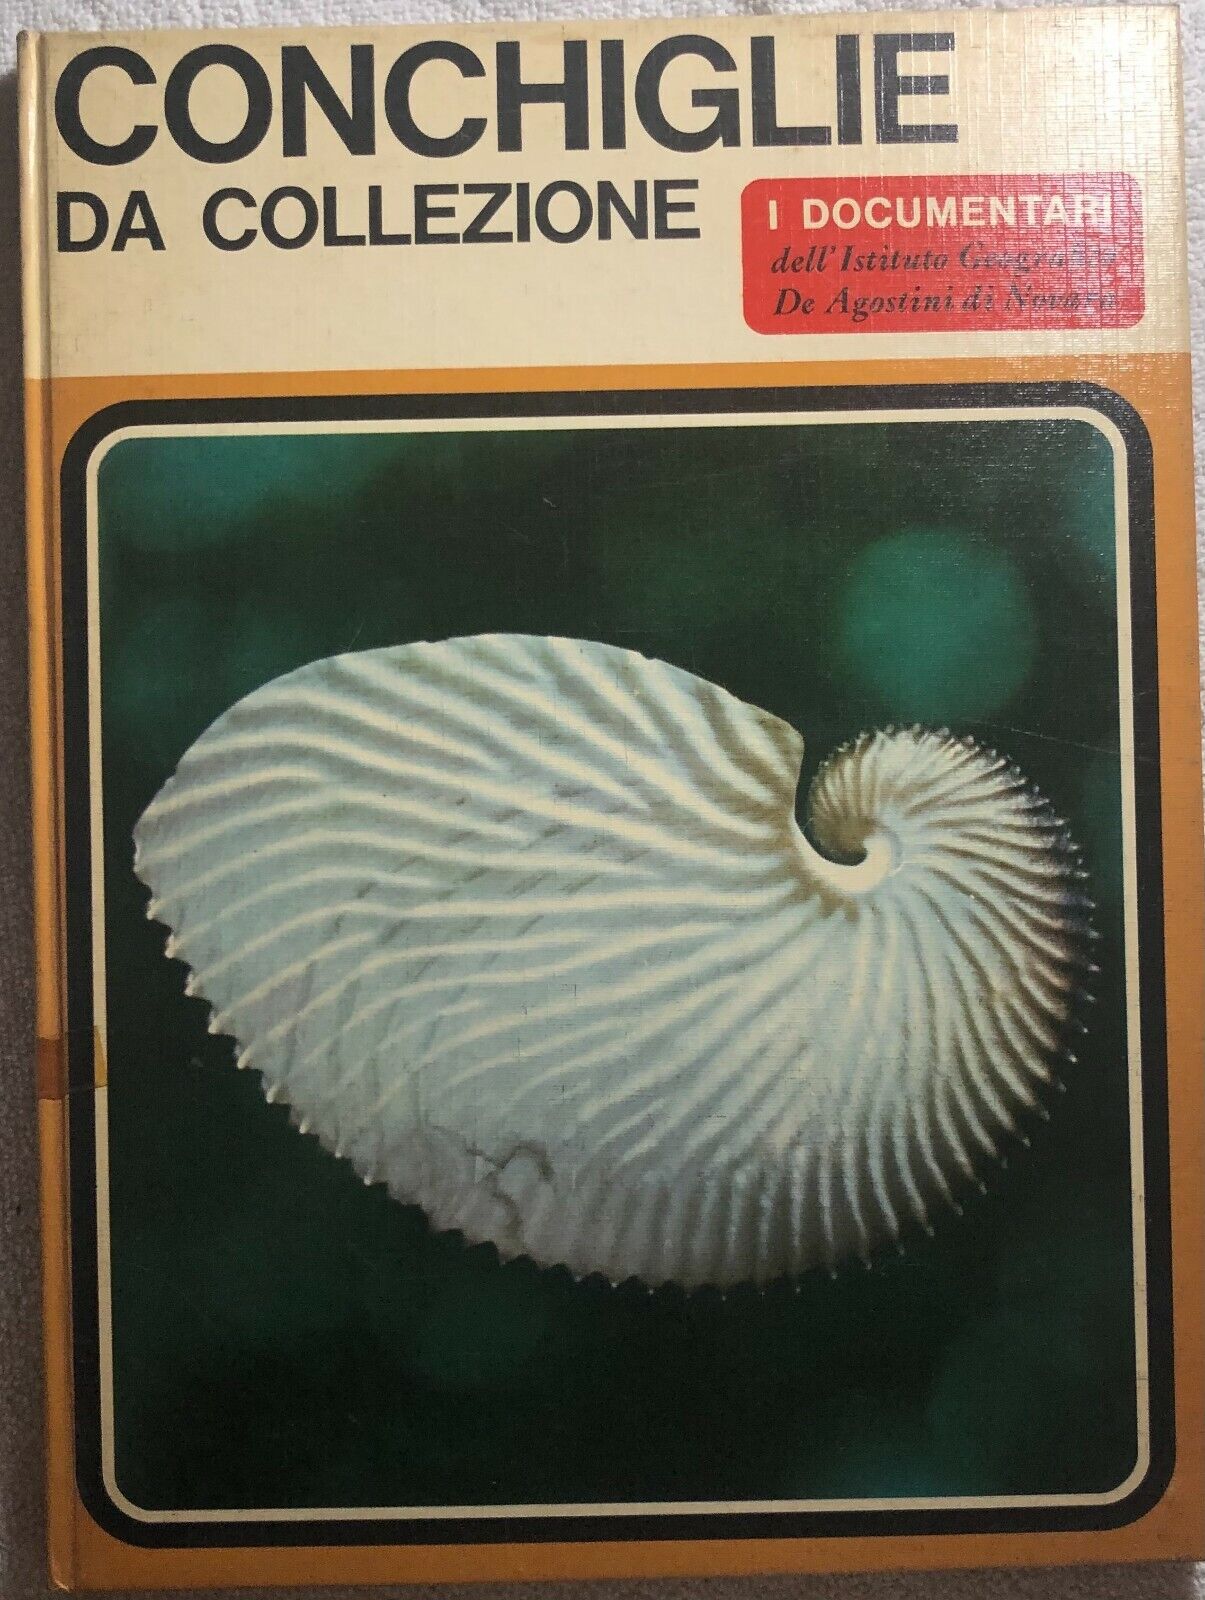 Conchiglie da collezione di Sergio Angeletti,  1968,  Istituto Geografico Deagos